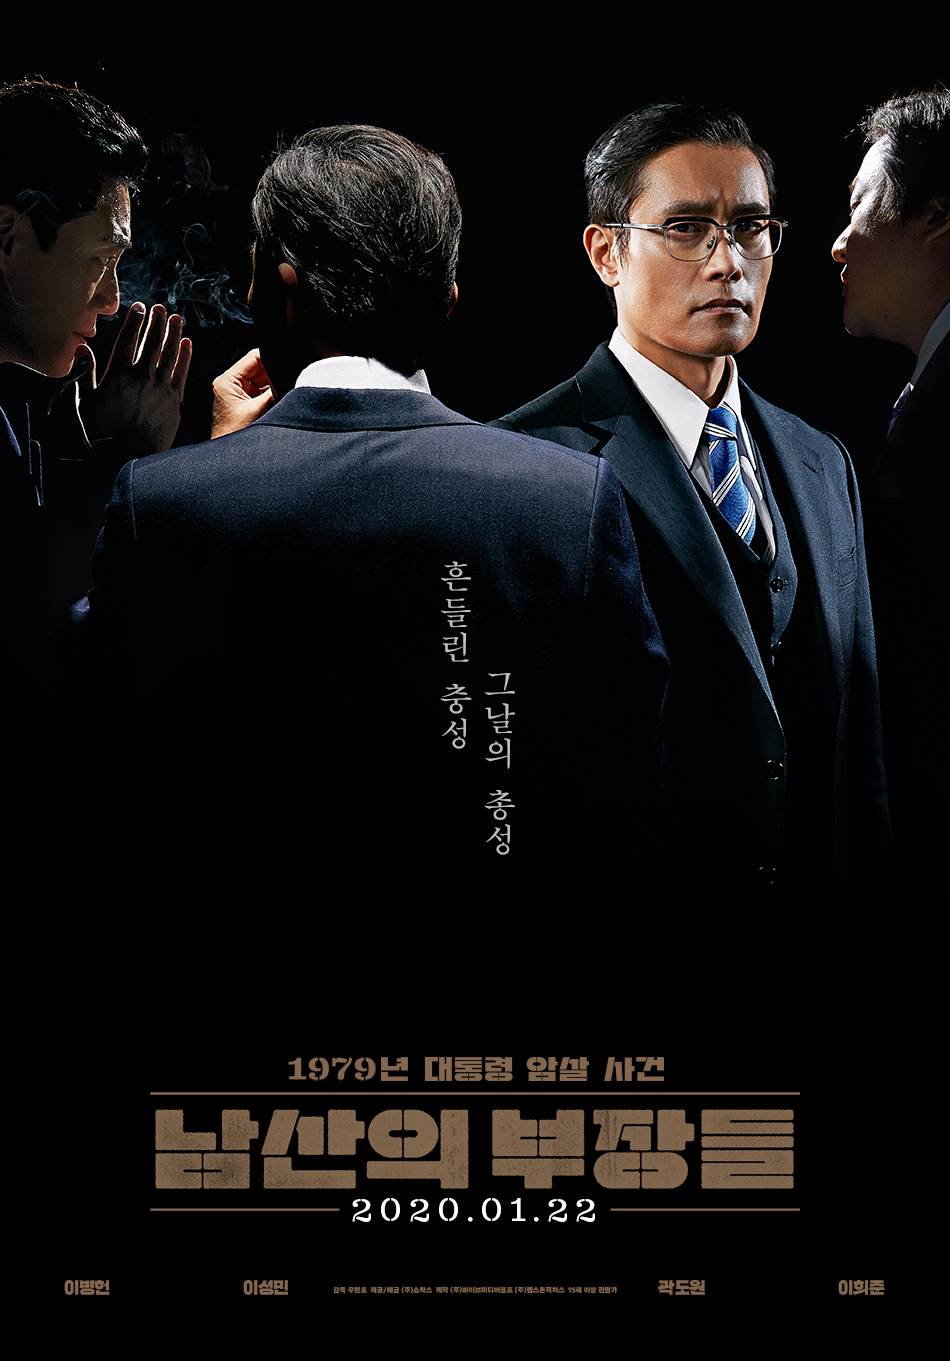 7 Film Korea bertema konspirasi politik, penuh intrik dan teka-teki